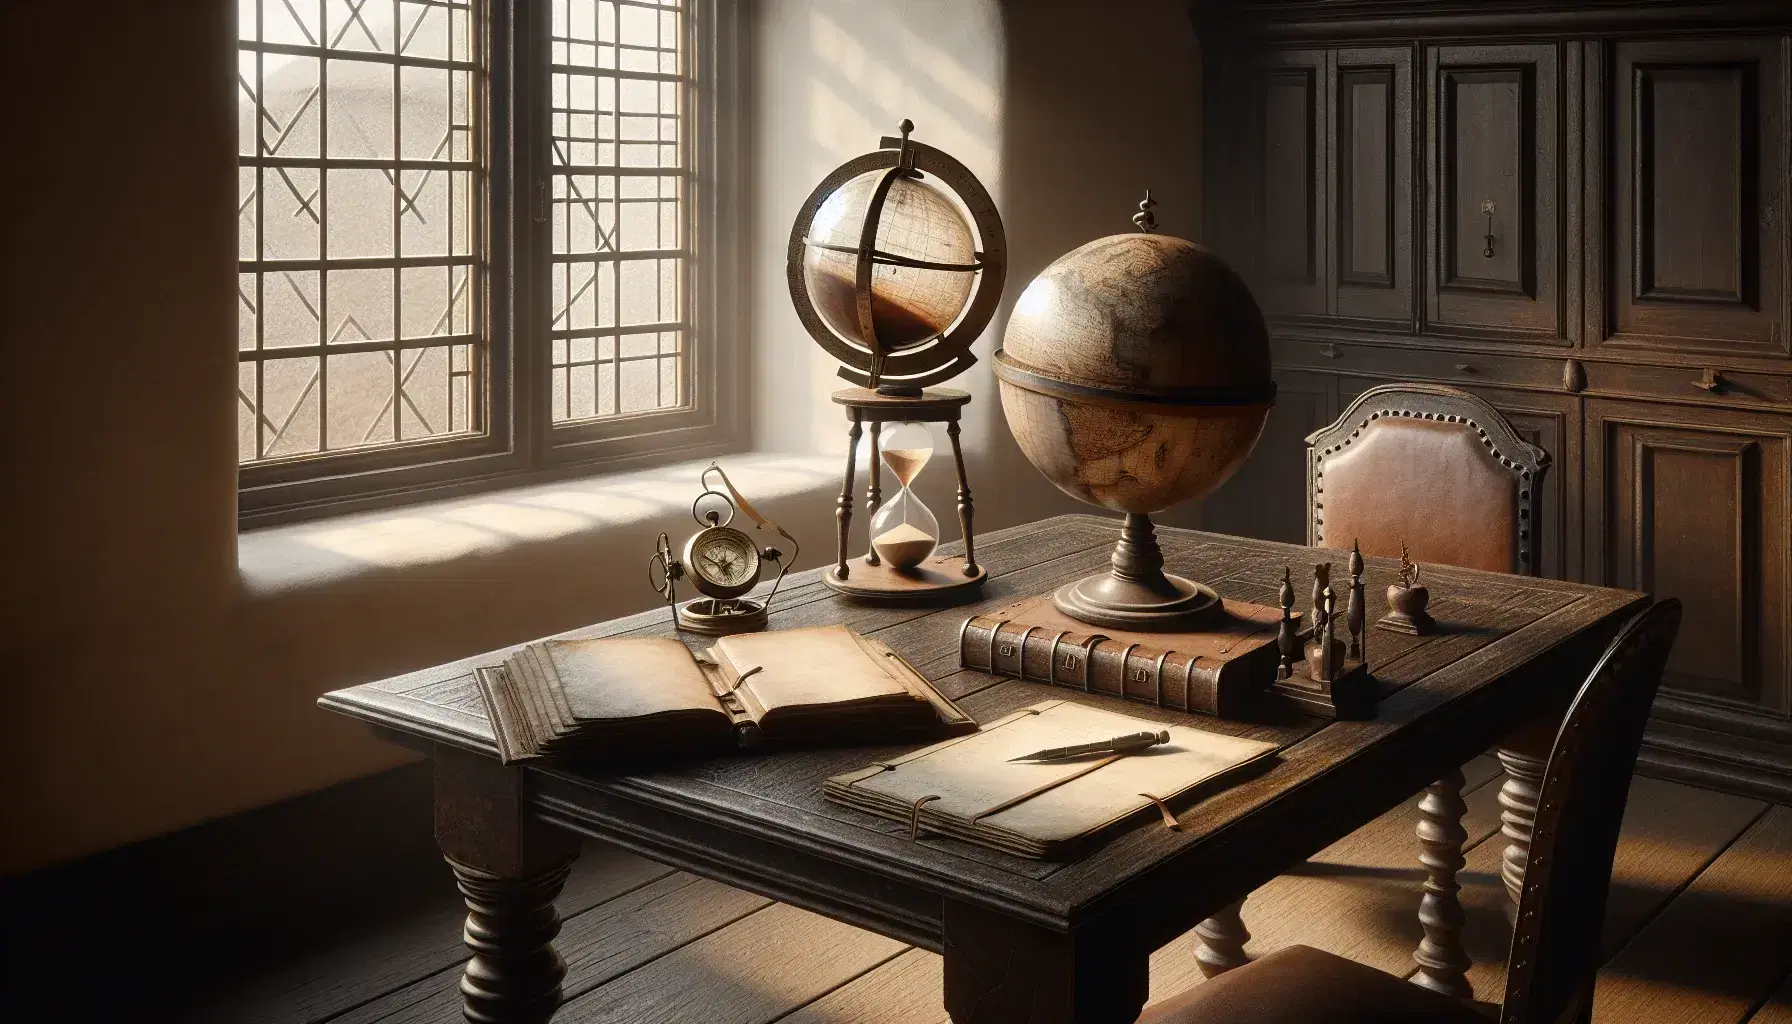 Escena de estudio del siglo XVII con mesa de madera oscura, globo terráqueo antiguo, compás metálico, cuaderno de cuero y reloj de arena junto a ventana iluminada.